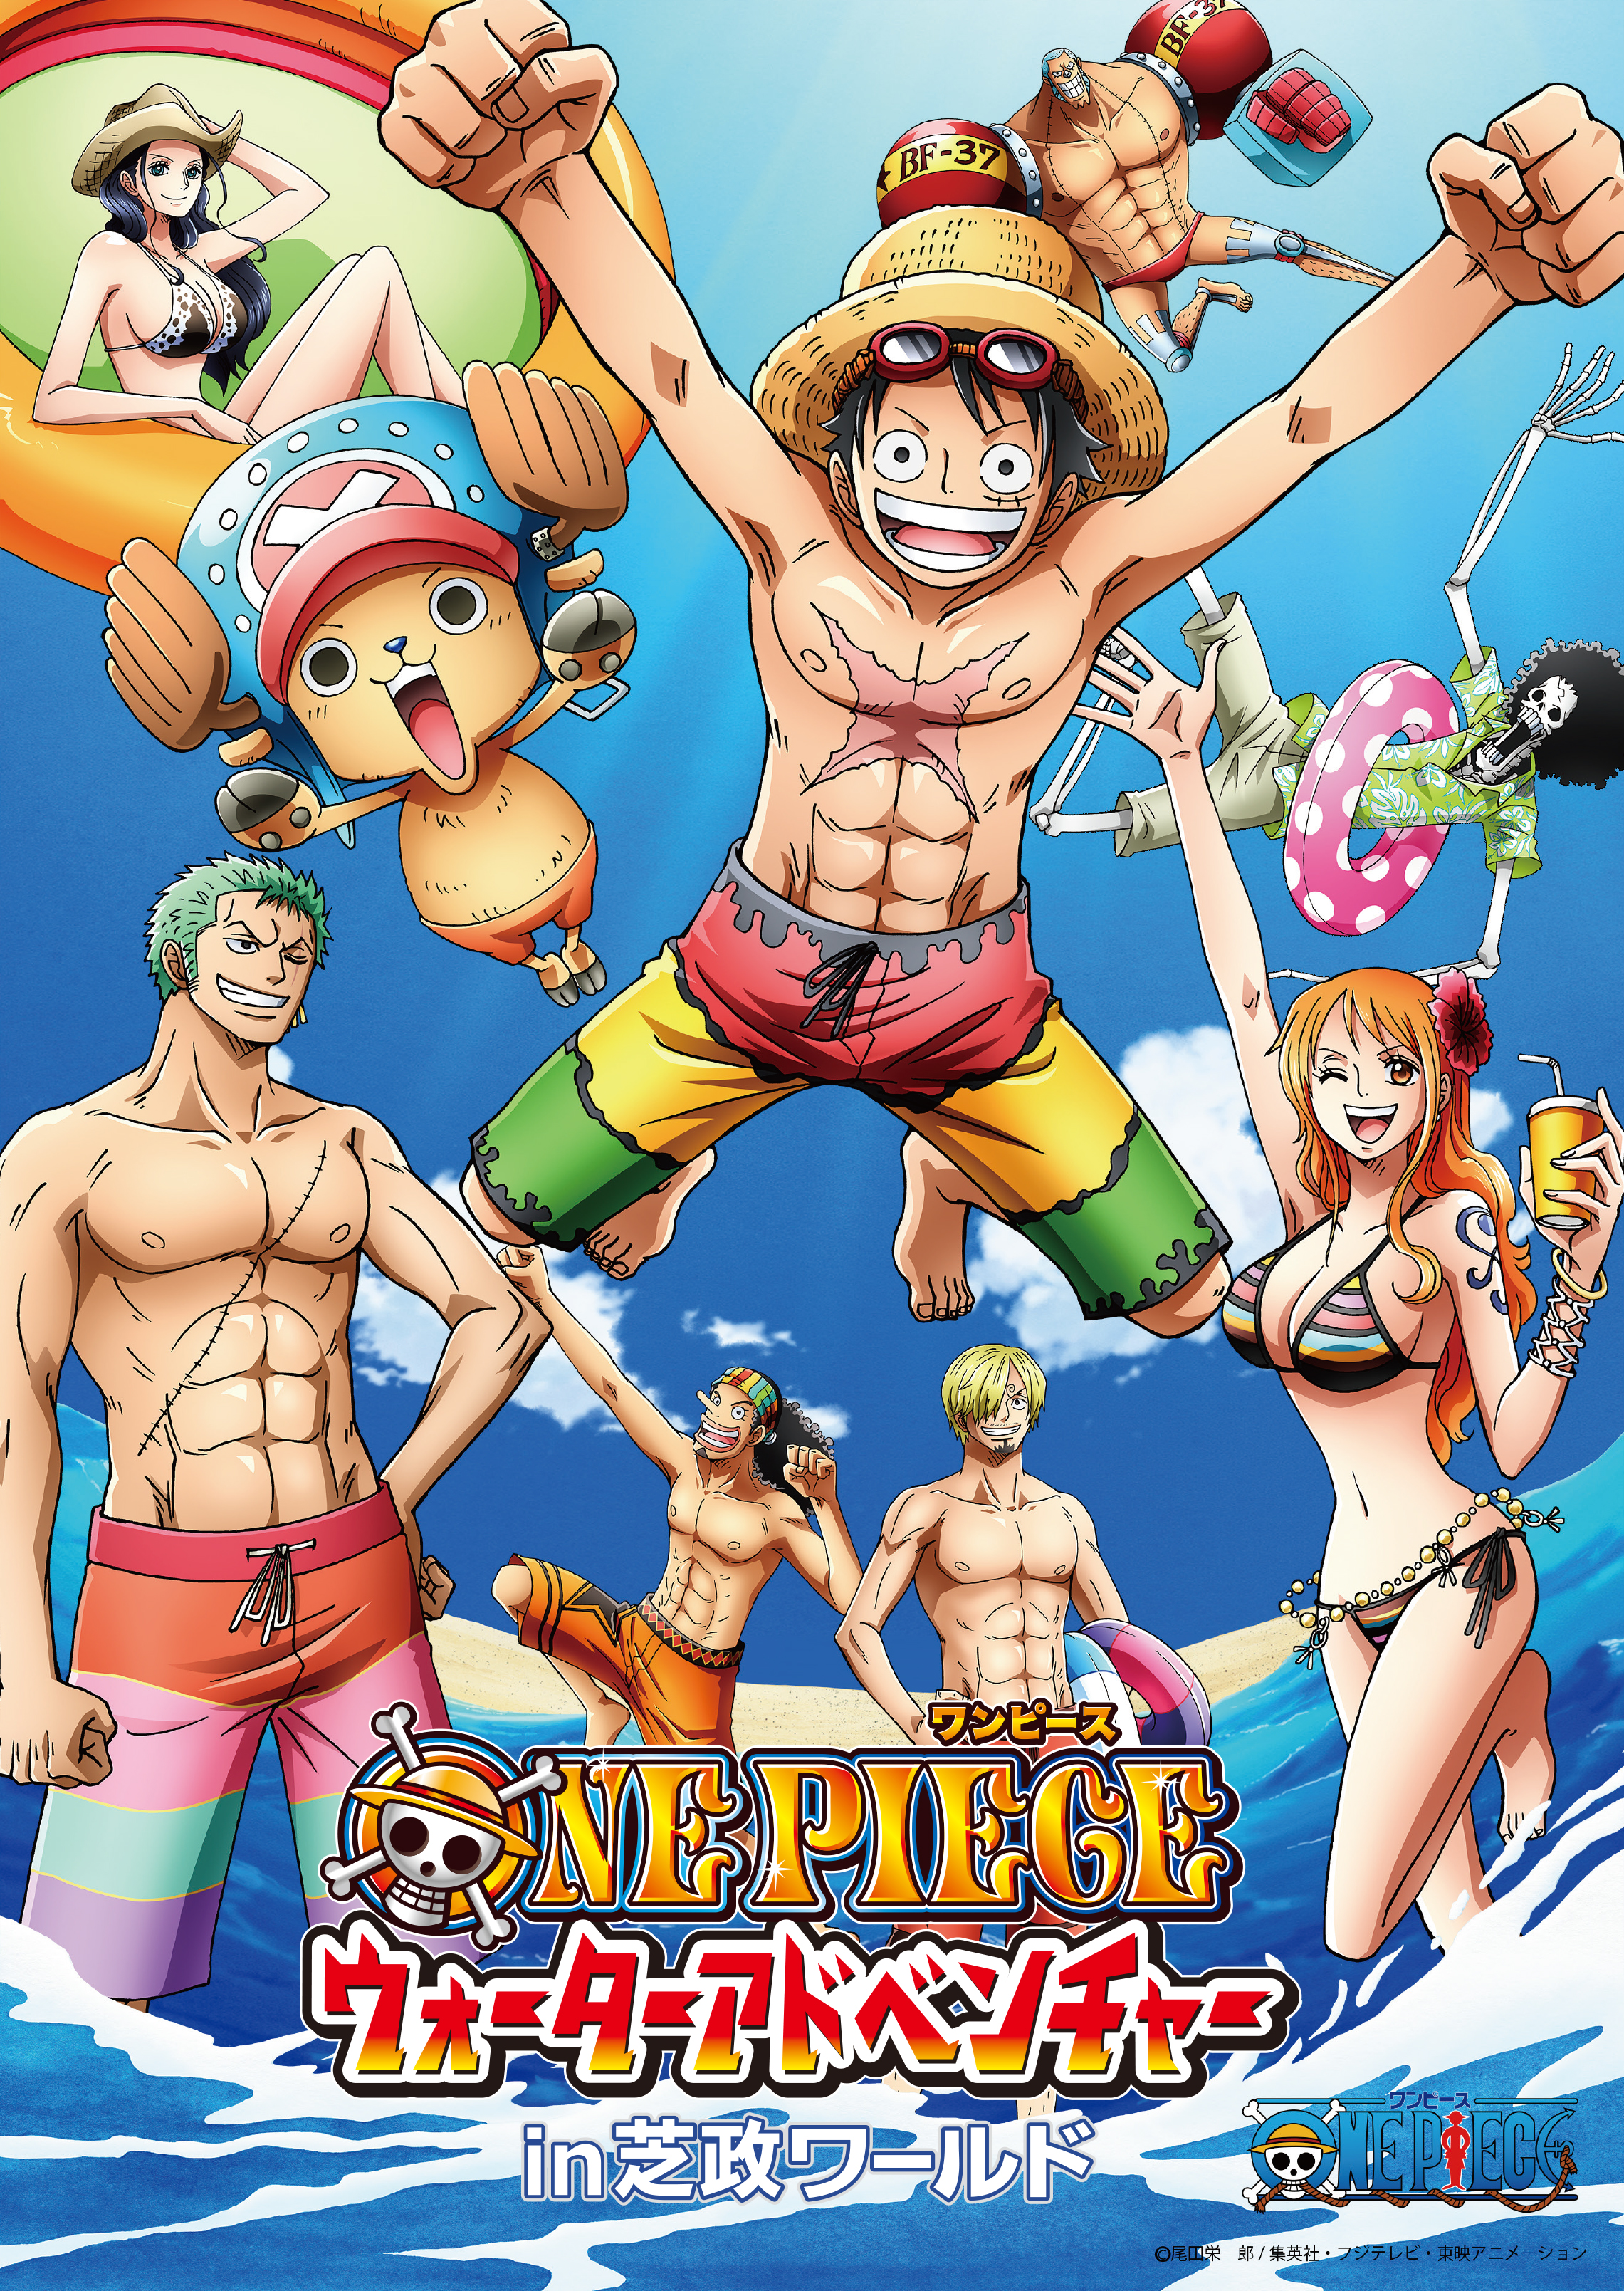 One Piece ウォーターアドベンチャー In芝政ワールド19年6月29日 土 9月23日 月 開催決定 プレスリリース 東映アニメーション株式会社